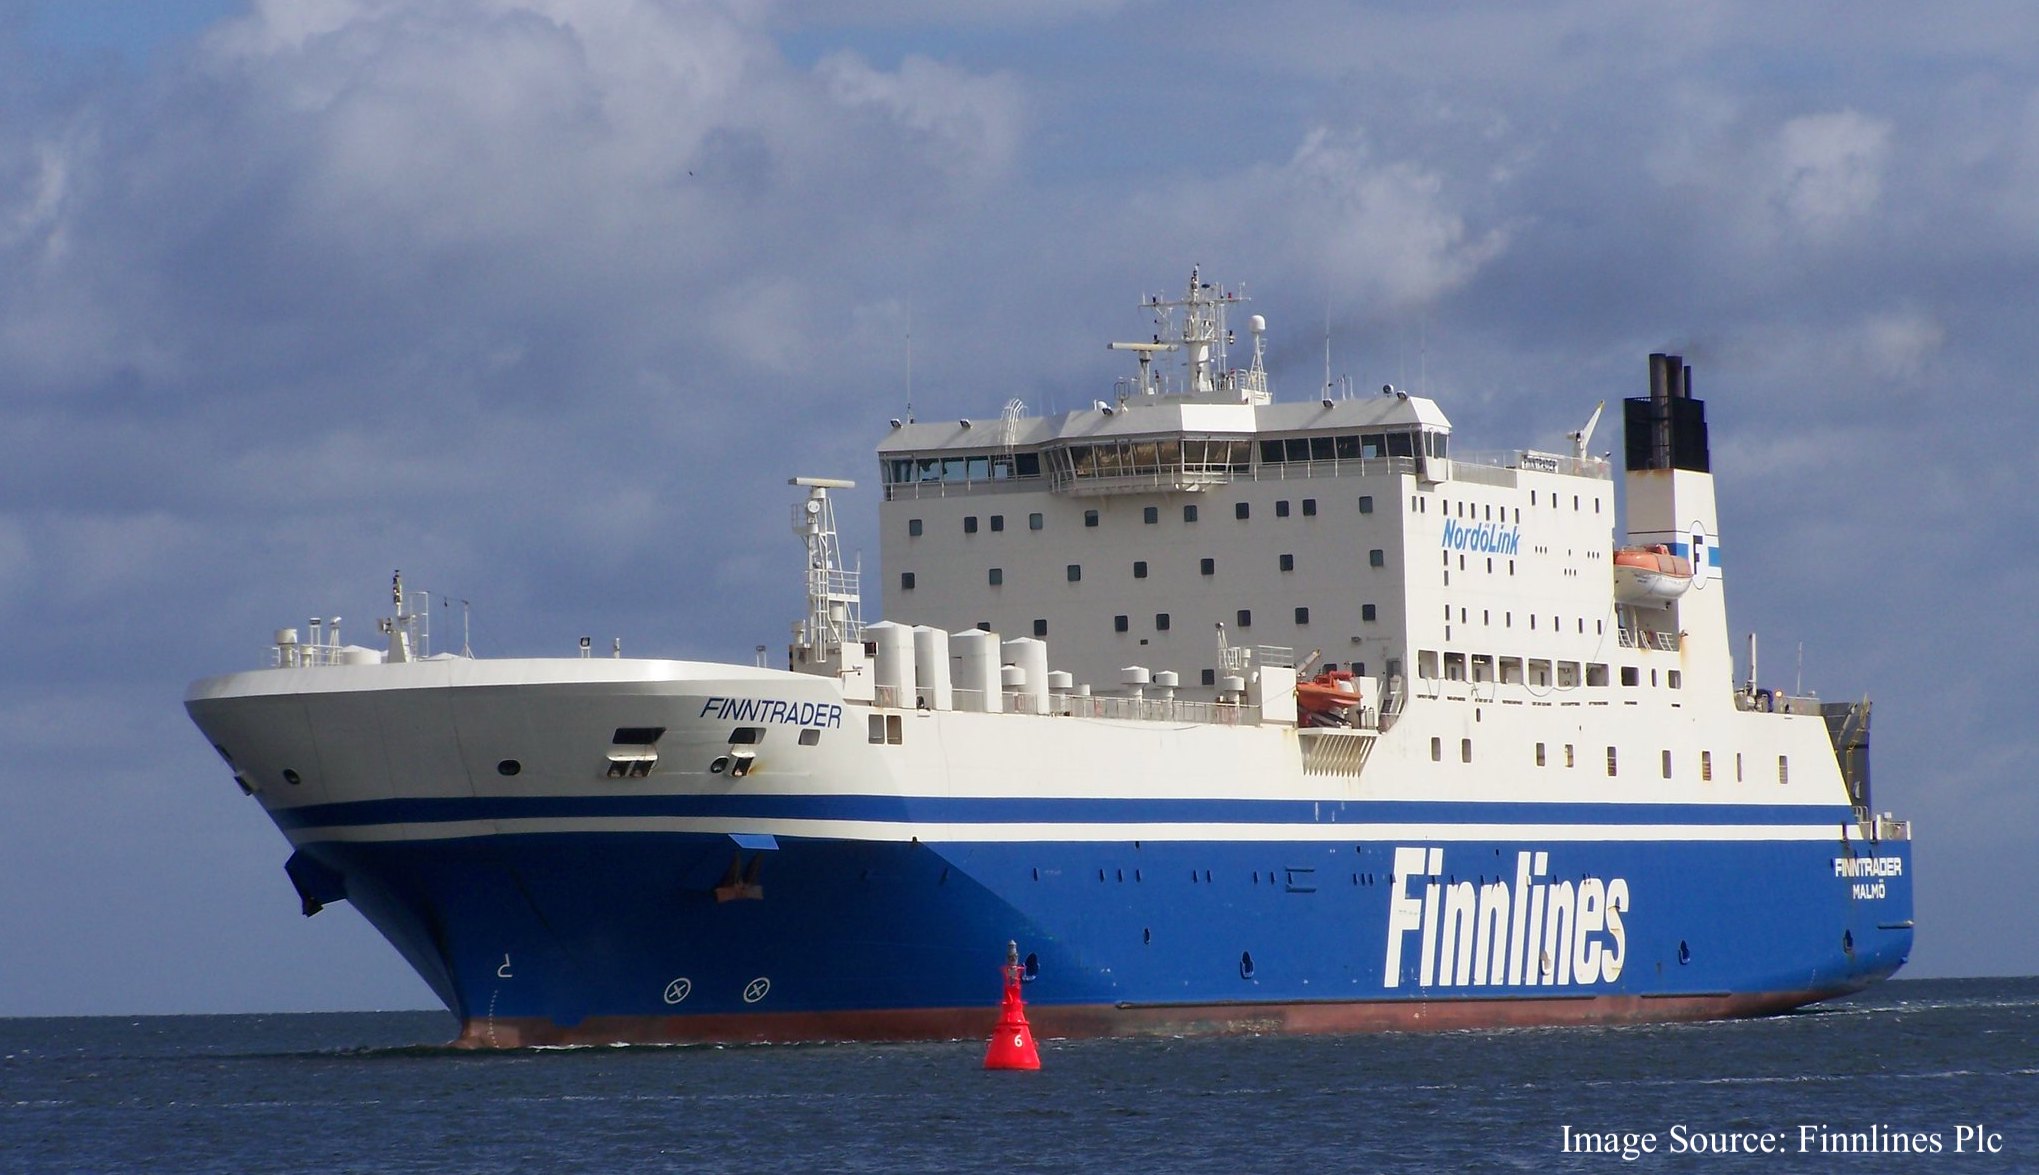 Kuva Finnlines - Finntrader aluksesta